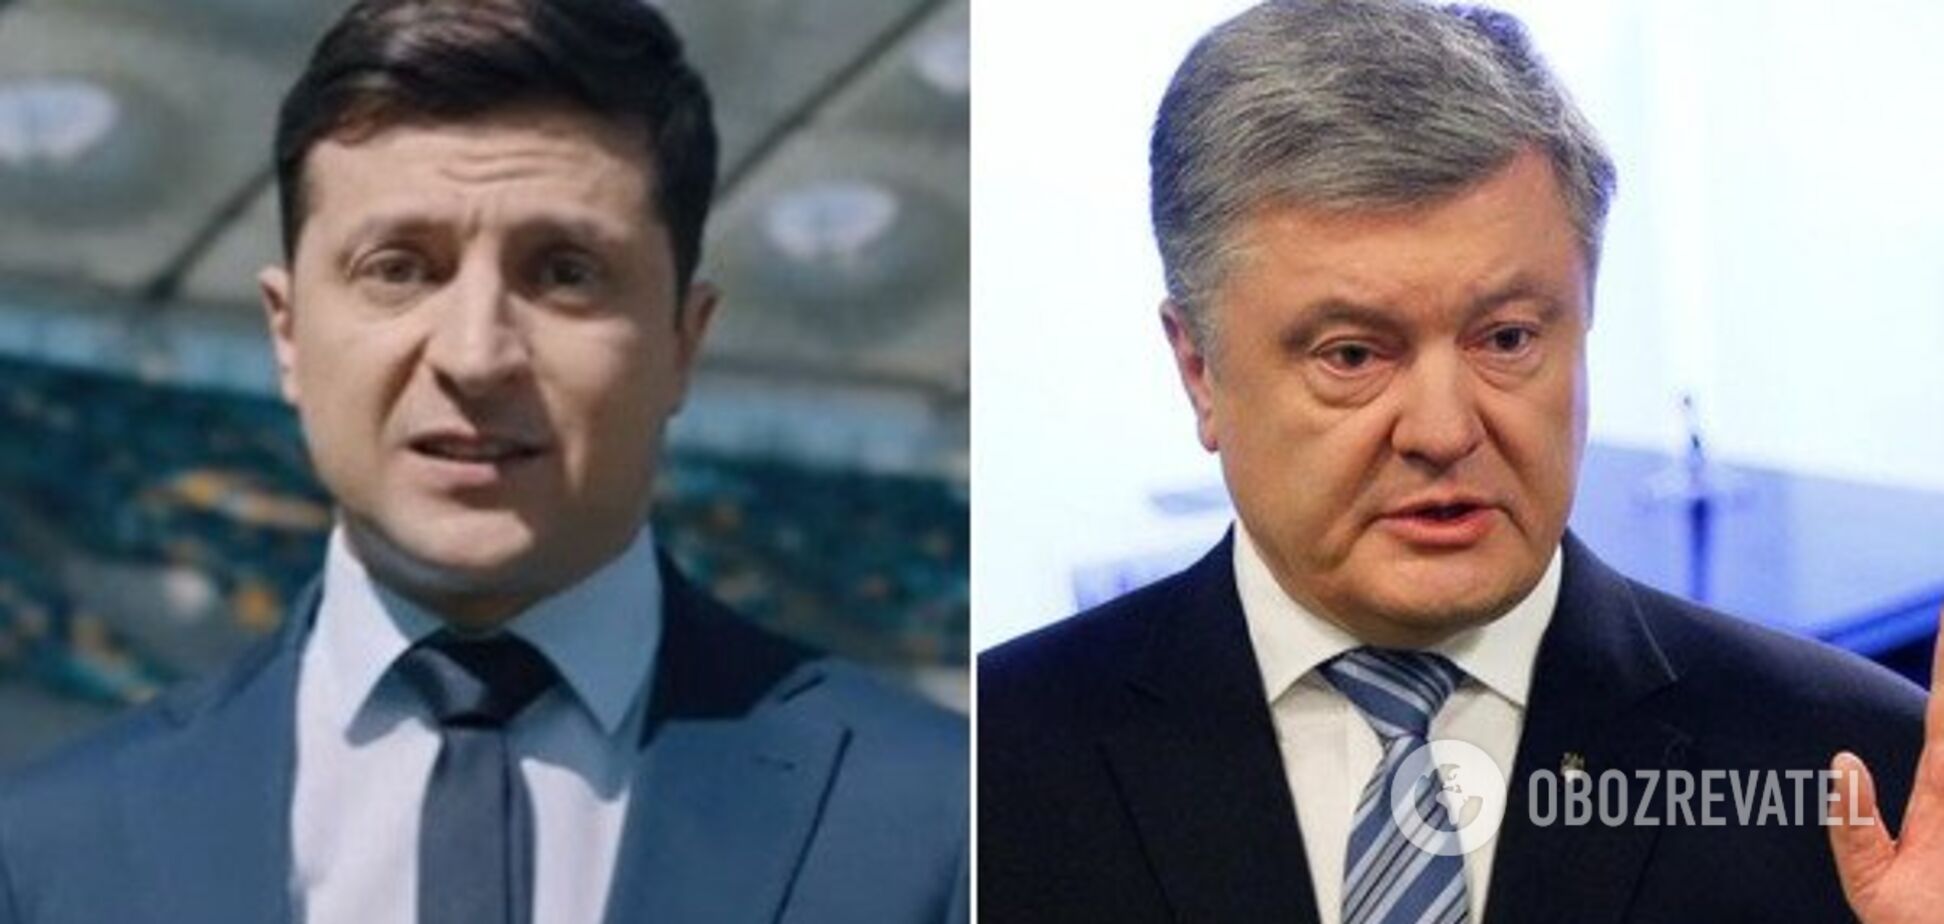 Де і за чий рахунок: ЦВК пролила світло на офіційні дебати Зеленського і Порошенка